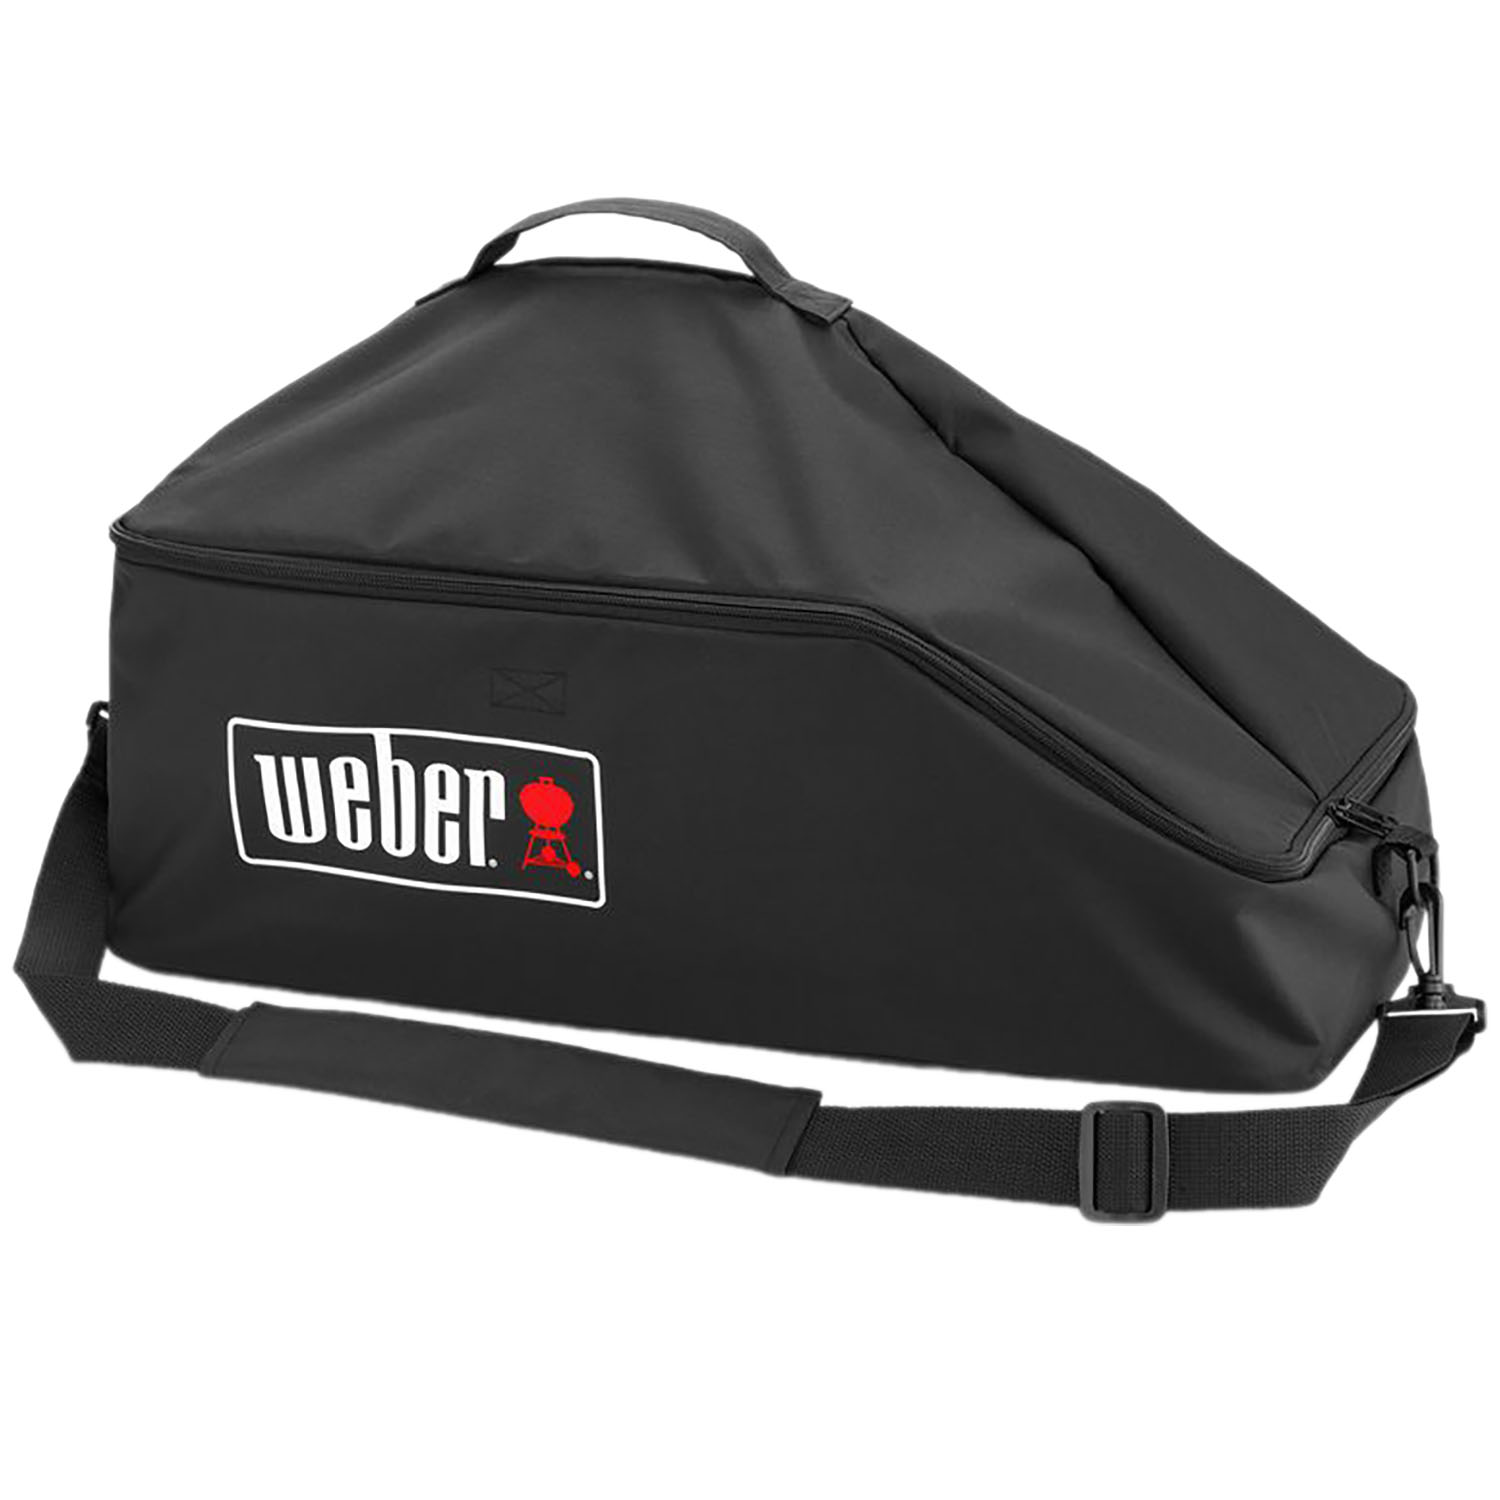 Чехол-сумка Weber Premium для гриля Go-Anywhere (7160) - фото 1